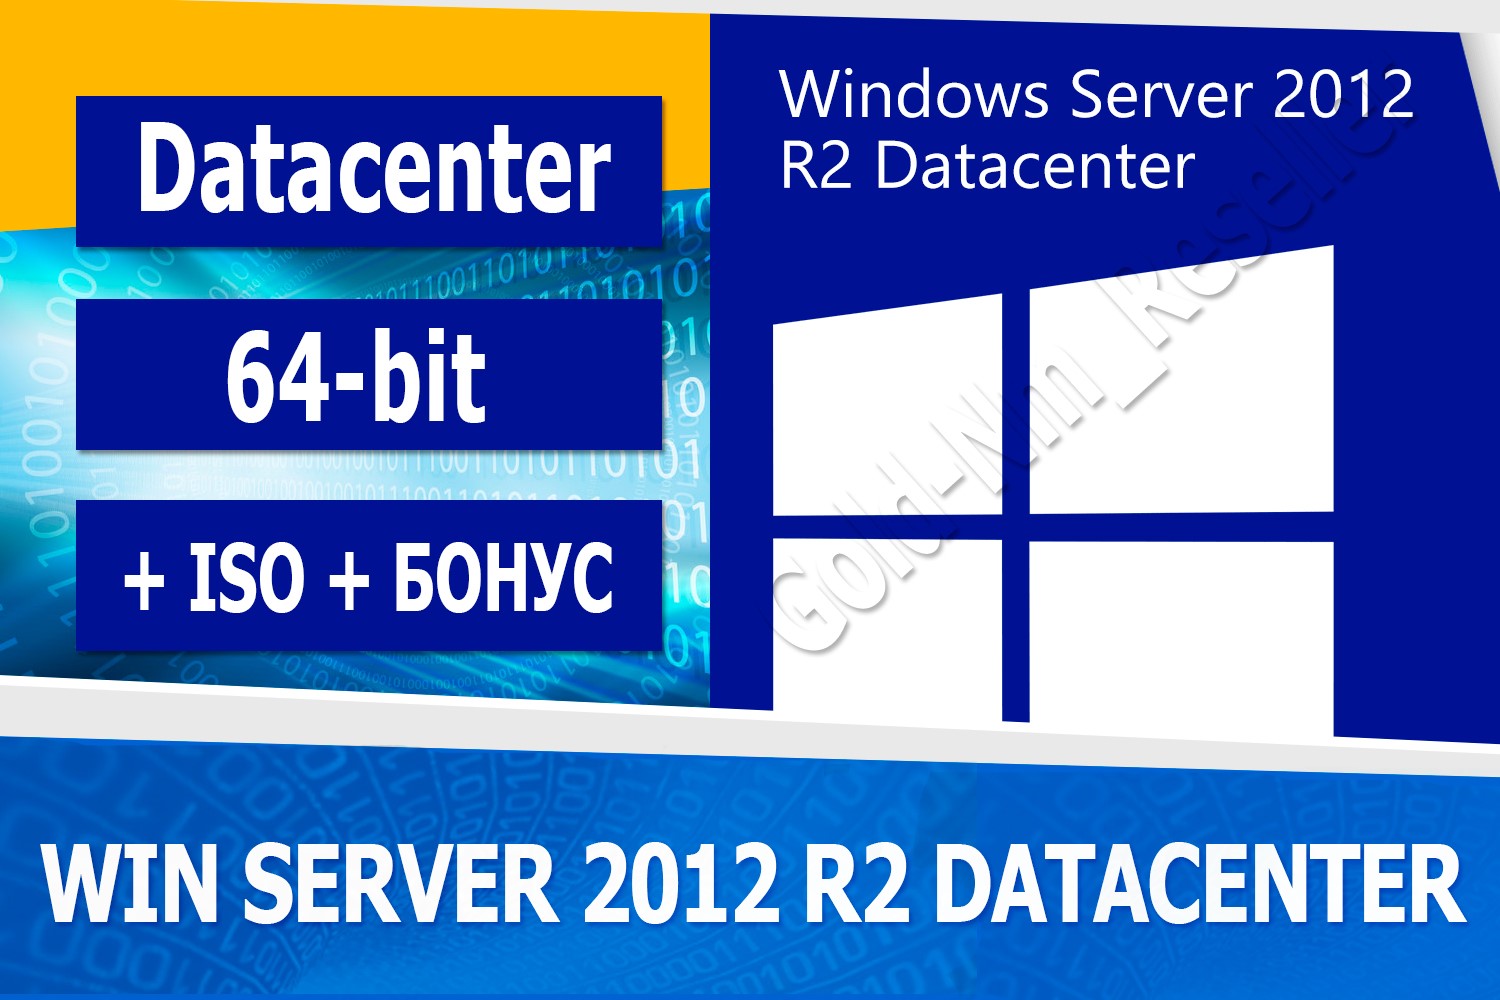 Buy Windows Server 2012 R2 Datacenter 64 Bit Iso Bonus For 697 On Gamecone 6738